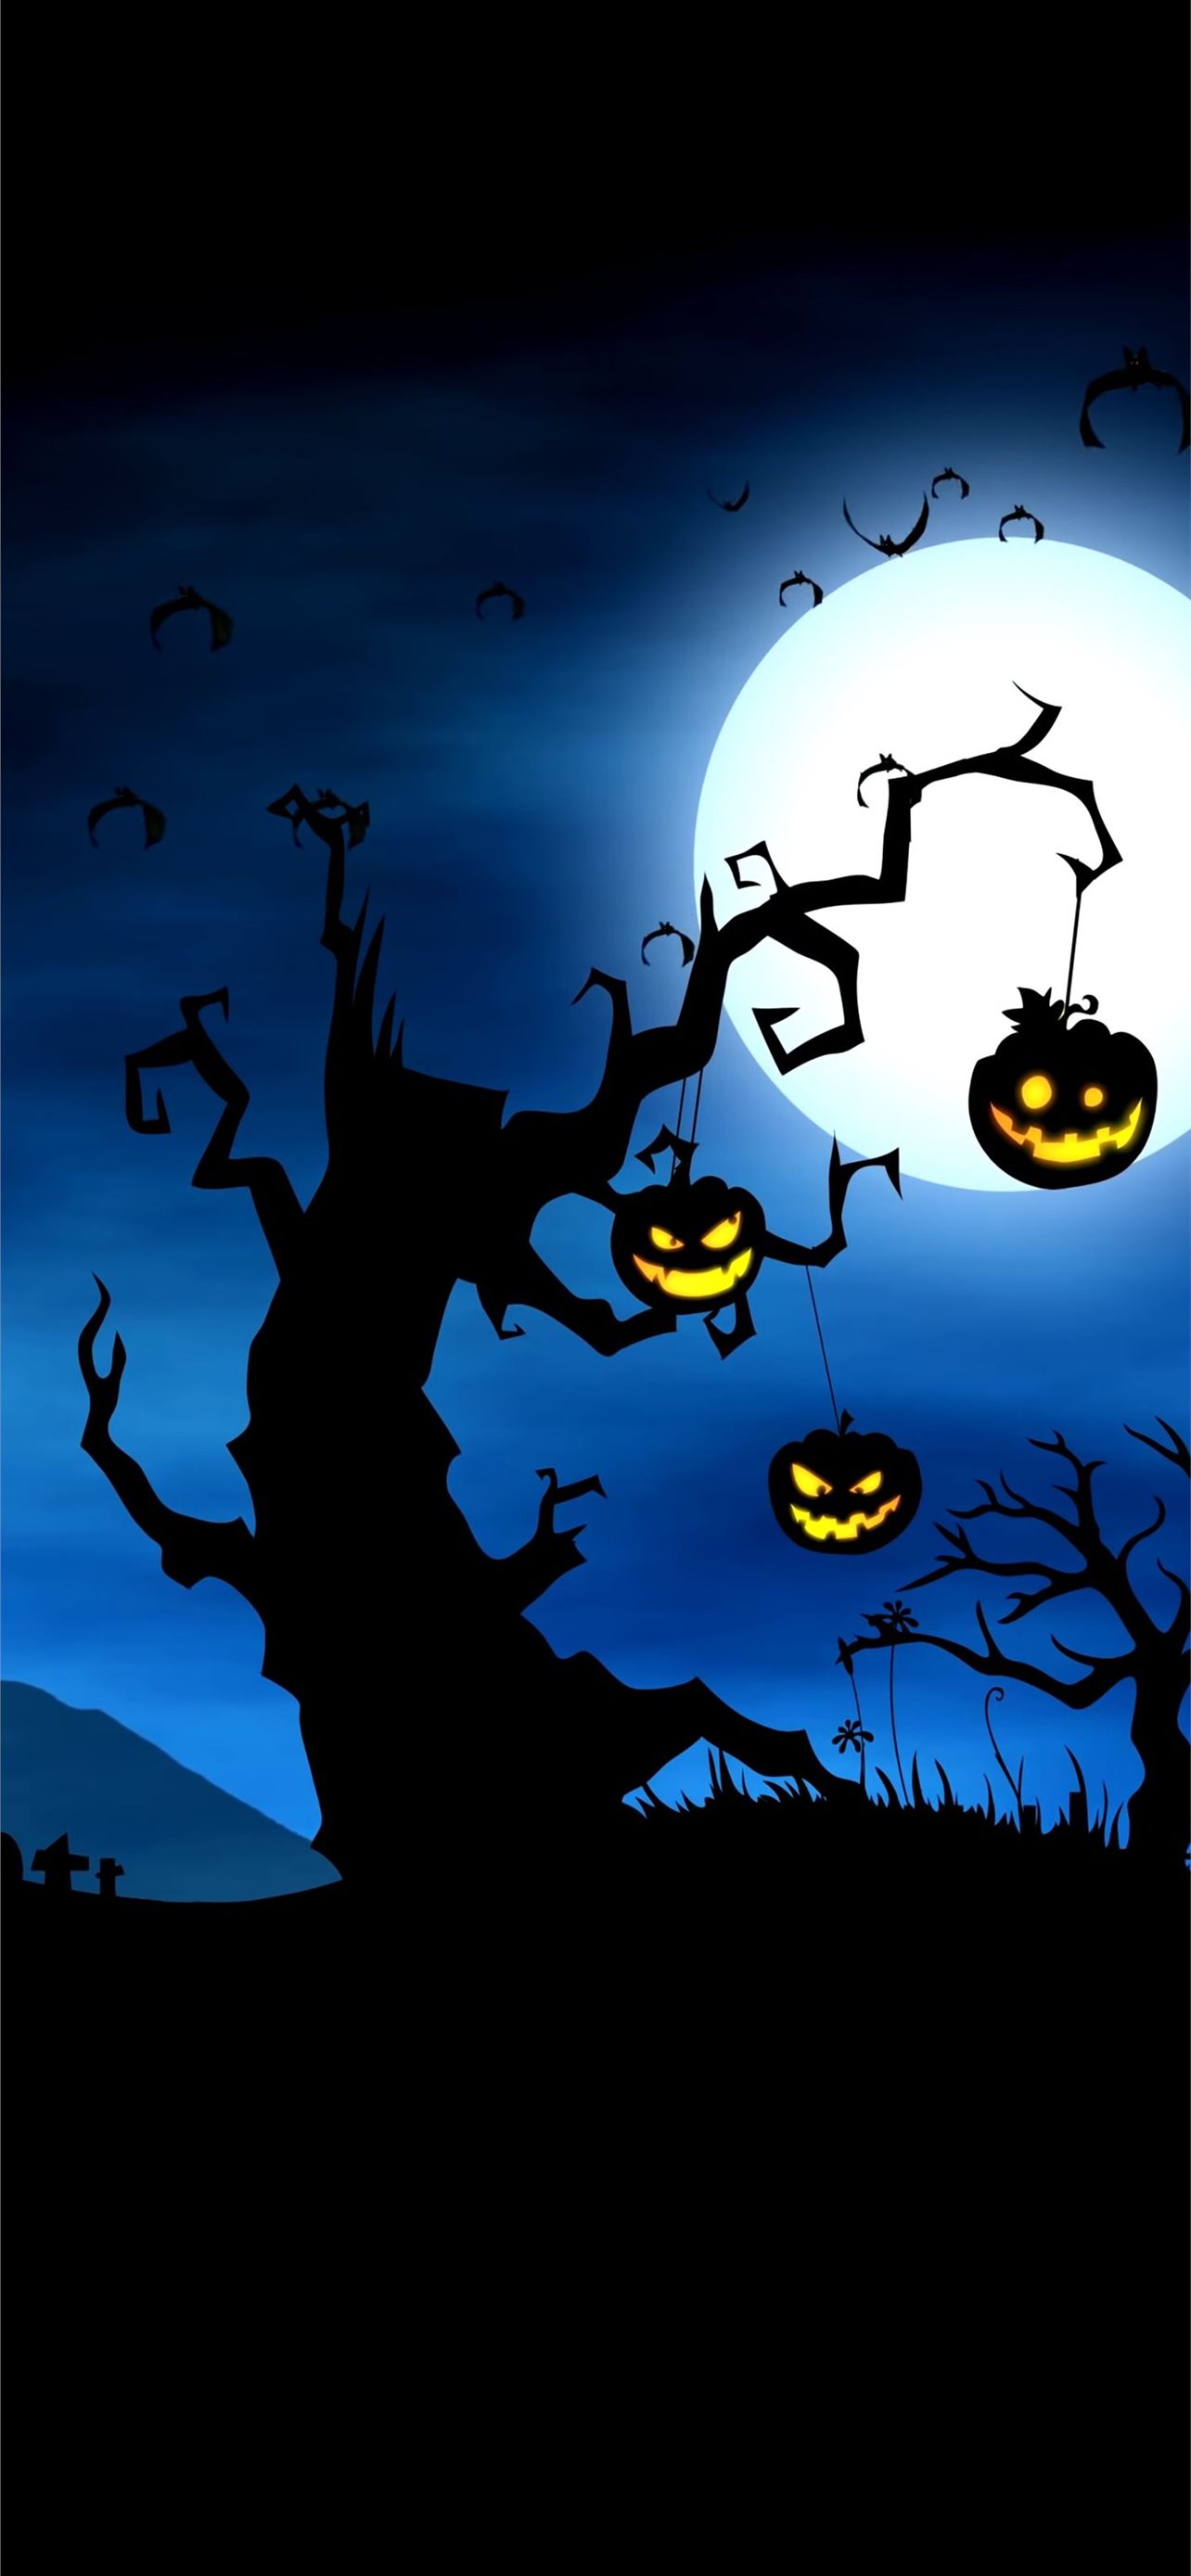 Halloween for iPhone iPhone wallpaper 